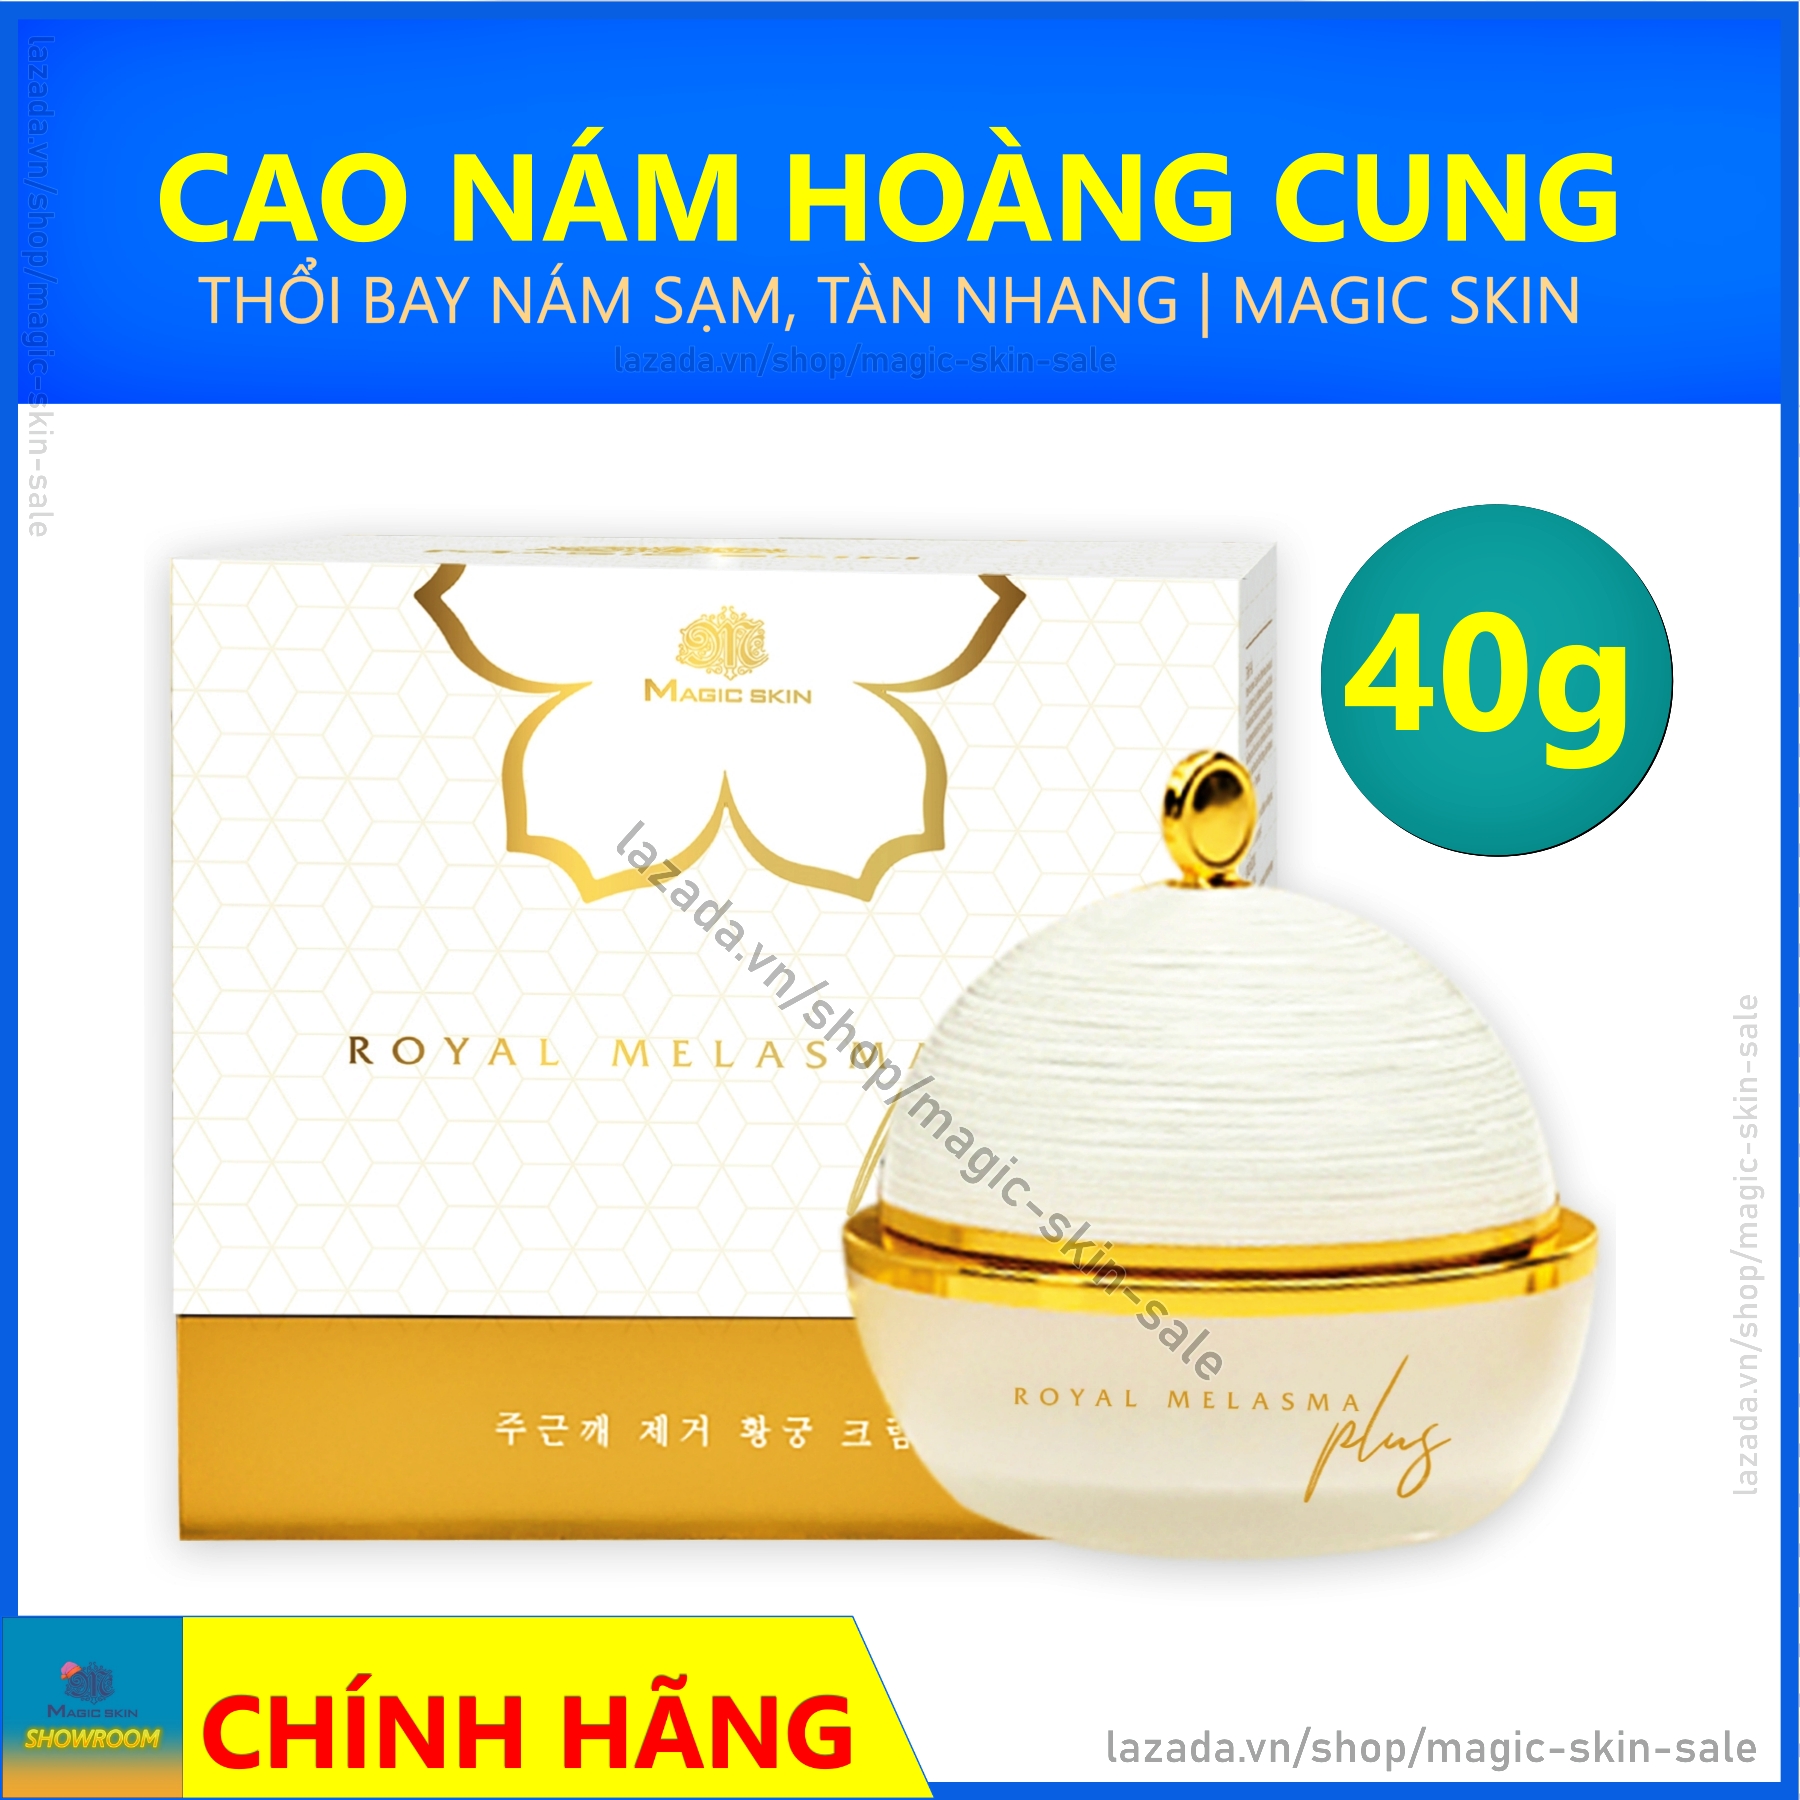 CAO NÁM HOÀNG CUNG MAGIC SKIN Royal Melasma Plus 👍 Kem ngừa nám tàn nhang ✔ Size 40g